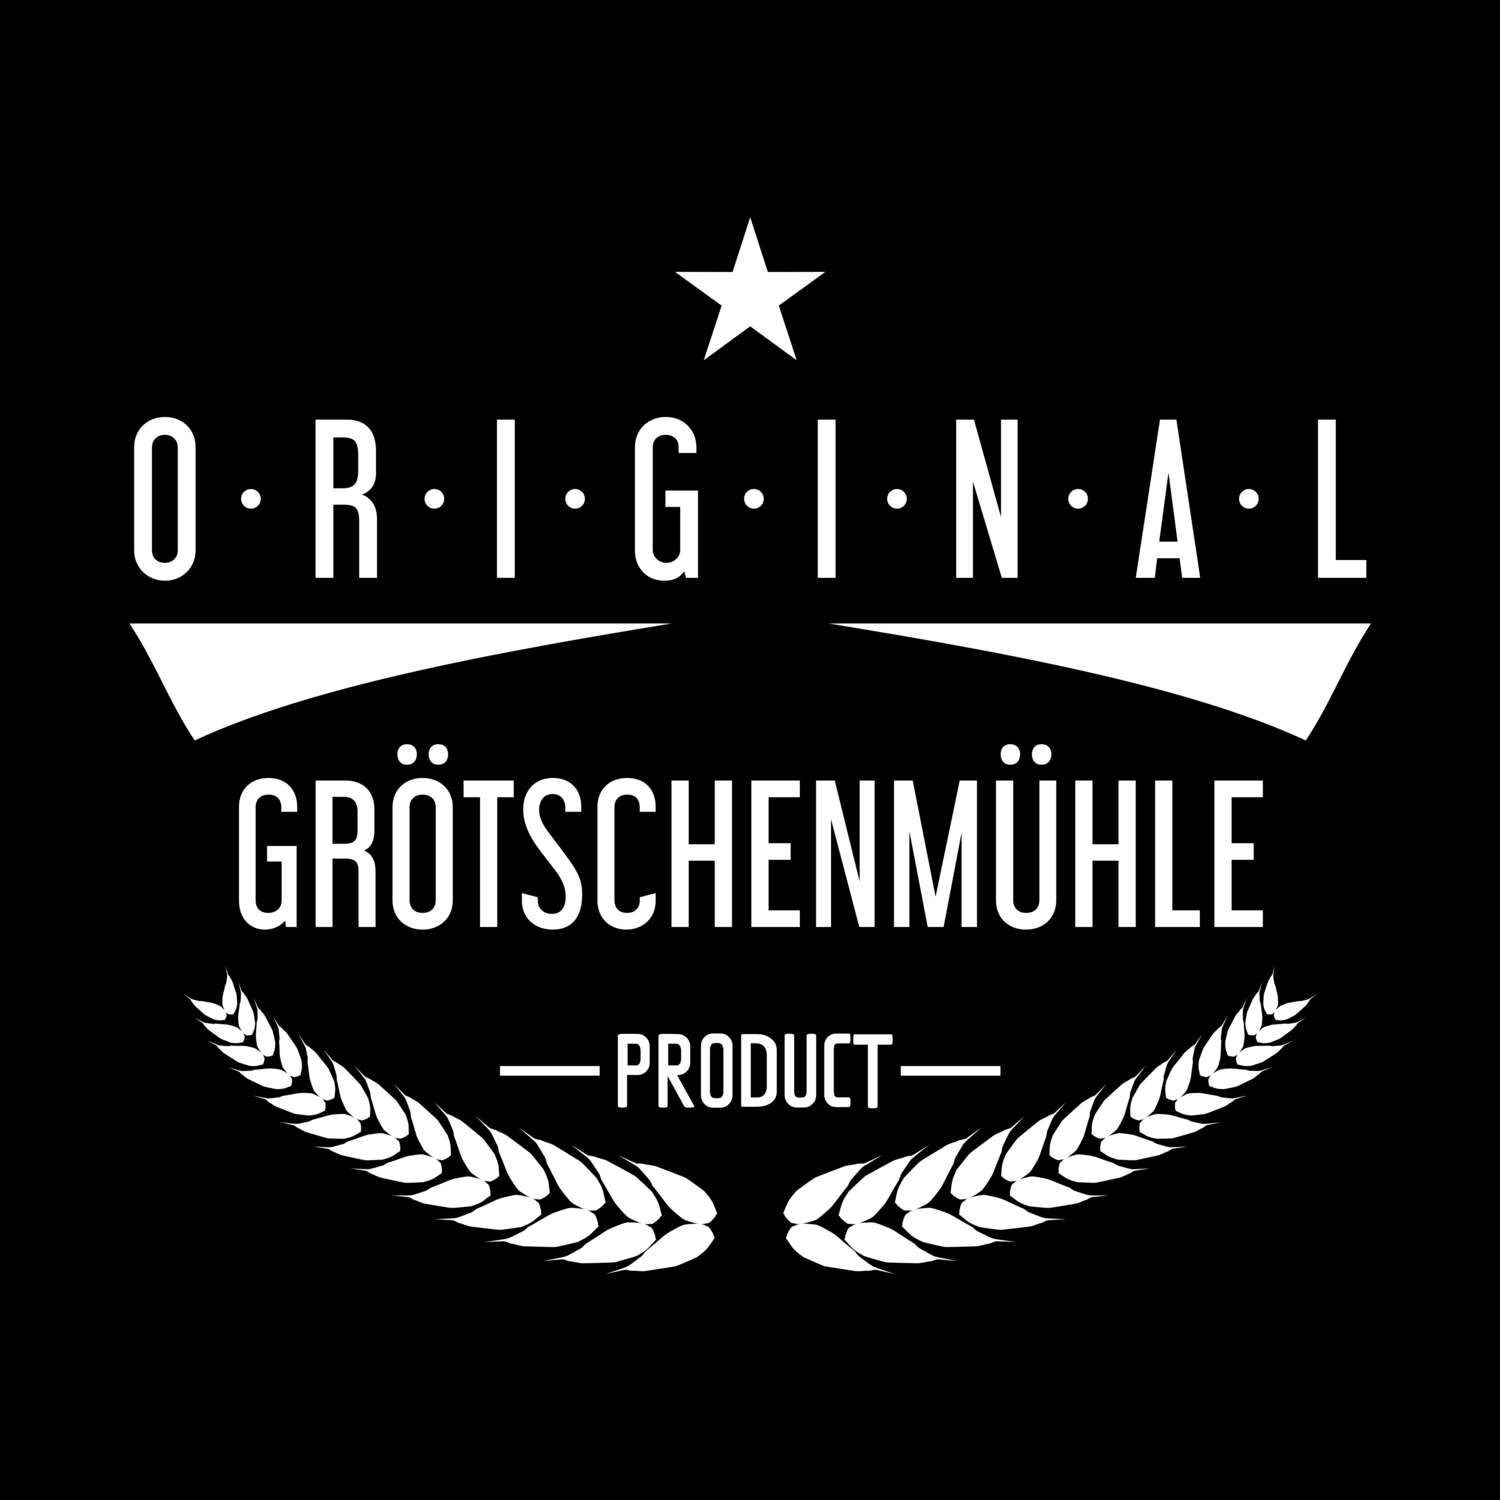 Grötschenmühle T-Shirt »Original Product«